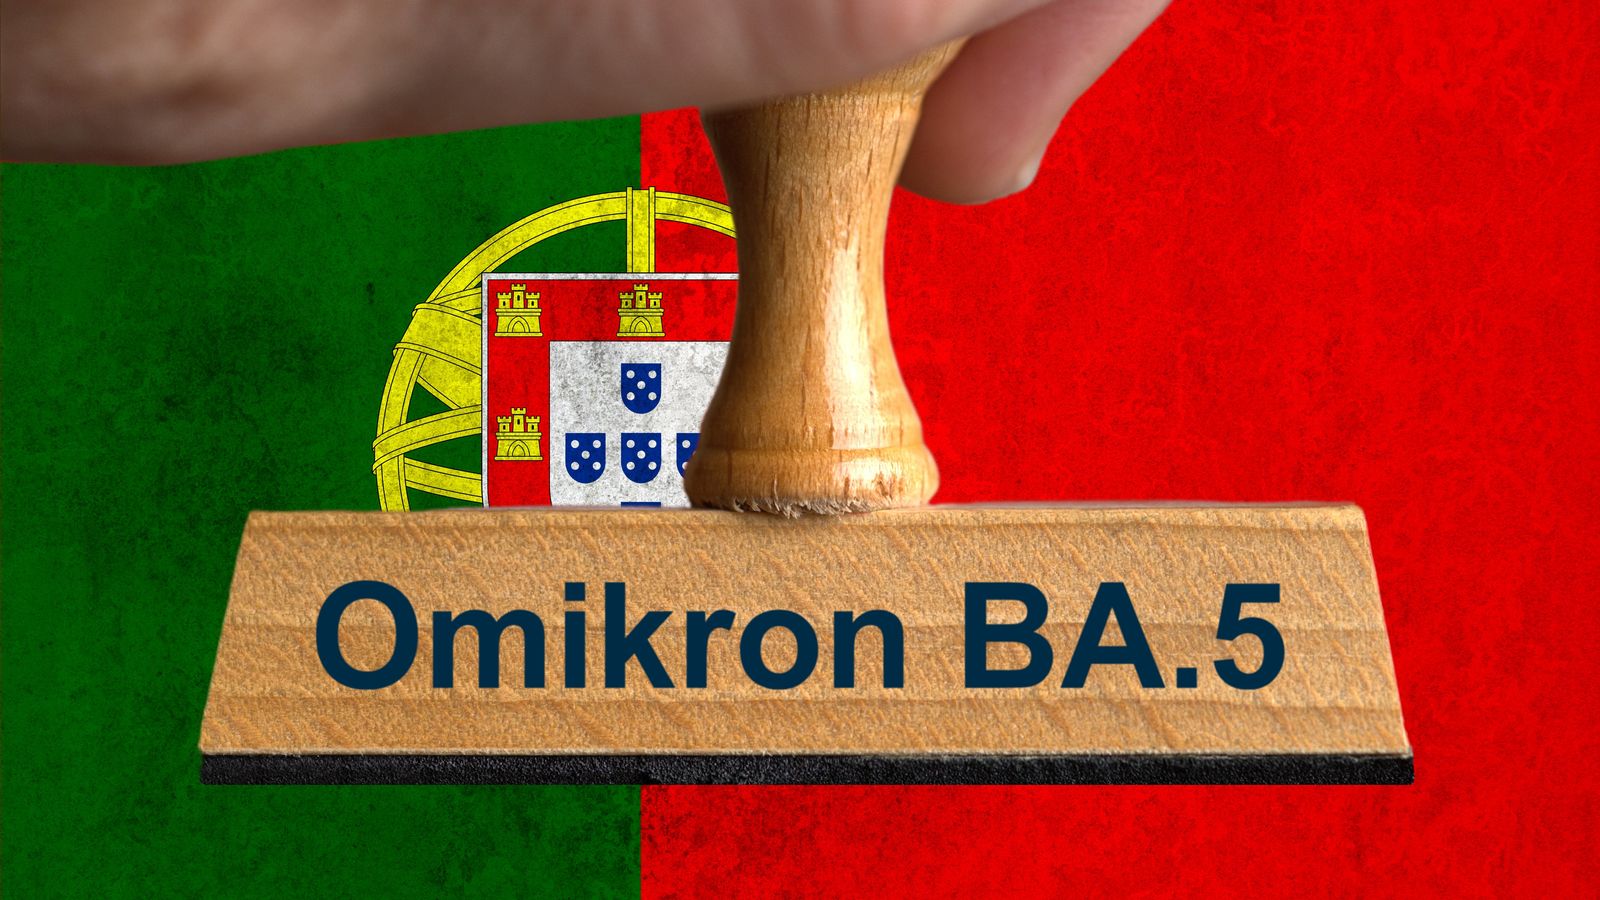 Corona Ticker: il sottotipo Omigron BA.5 è in aumento in Portogallo